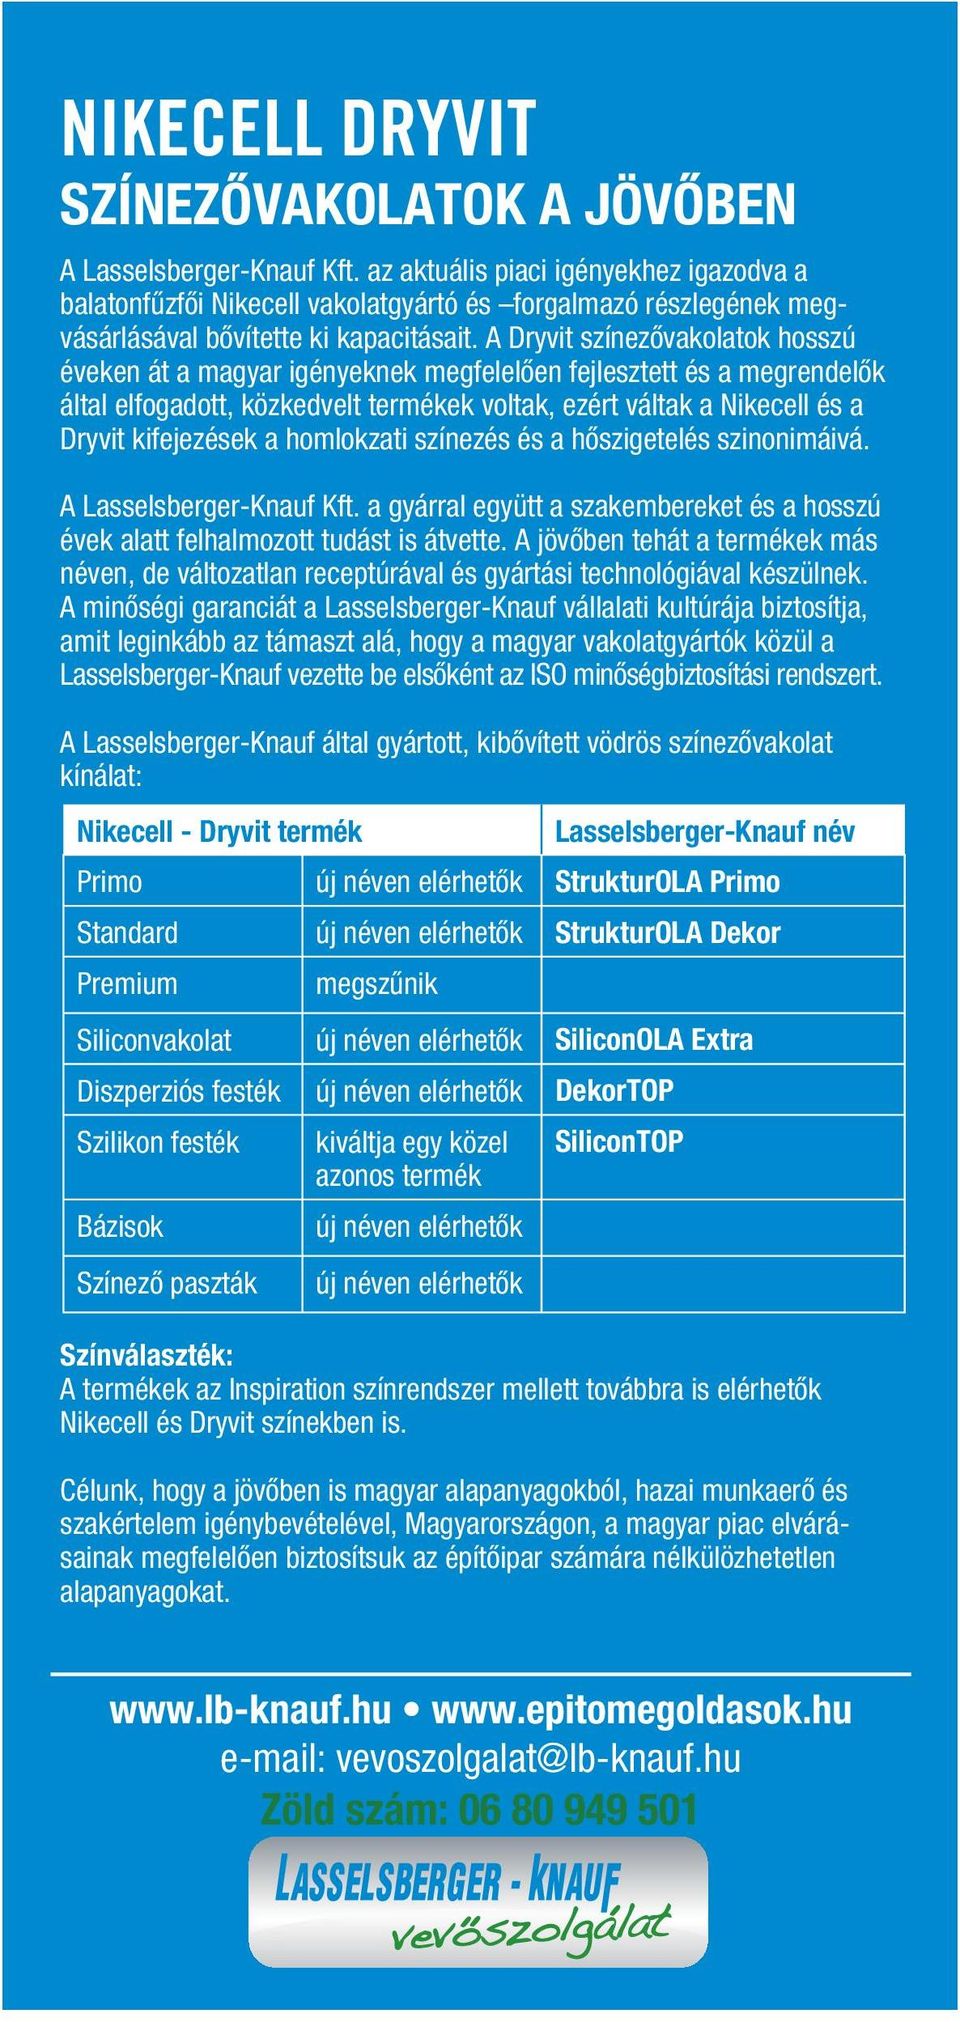 A Dryvit színezővakolatok hosszú éveken át a magyar igényeknek megfelelően fejlesztett és a megrendelők által elfogadott, közkedvelt termékek voltak, ezért váltak a Nikecell és a Dryvit kifejezések a